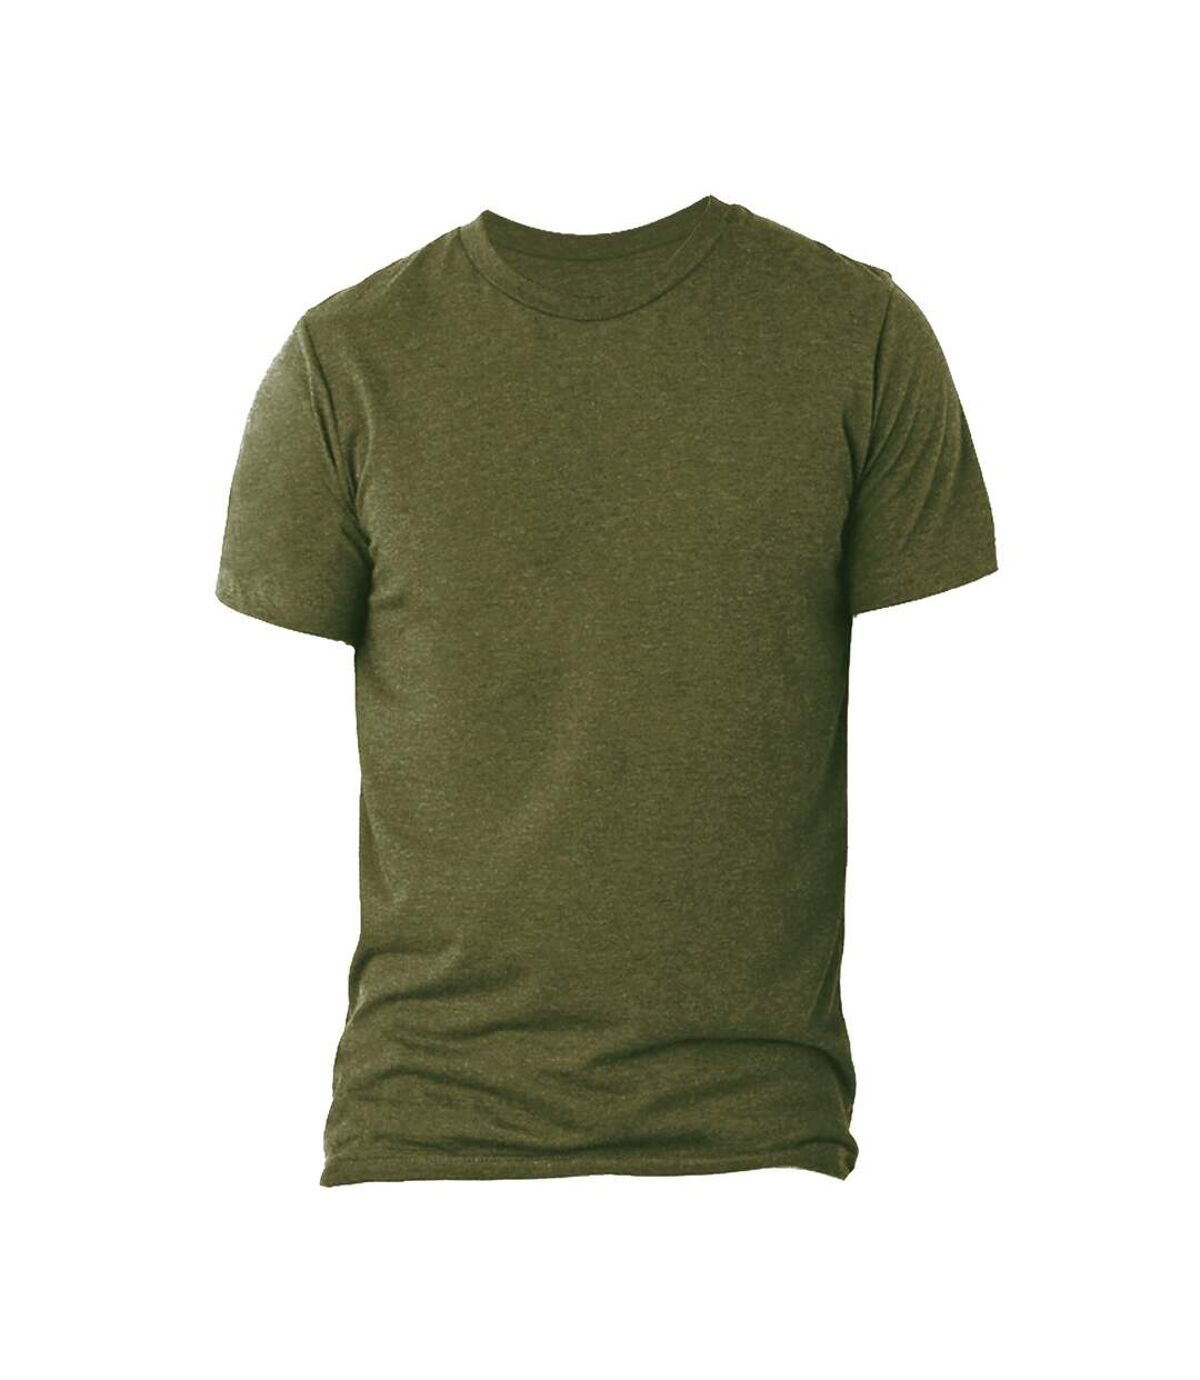 Canvas Triblend - T-shirt à manches courtes - Homme (Olive Triblend) - UTBC168